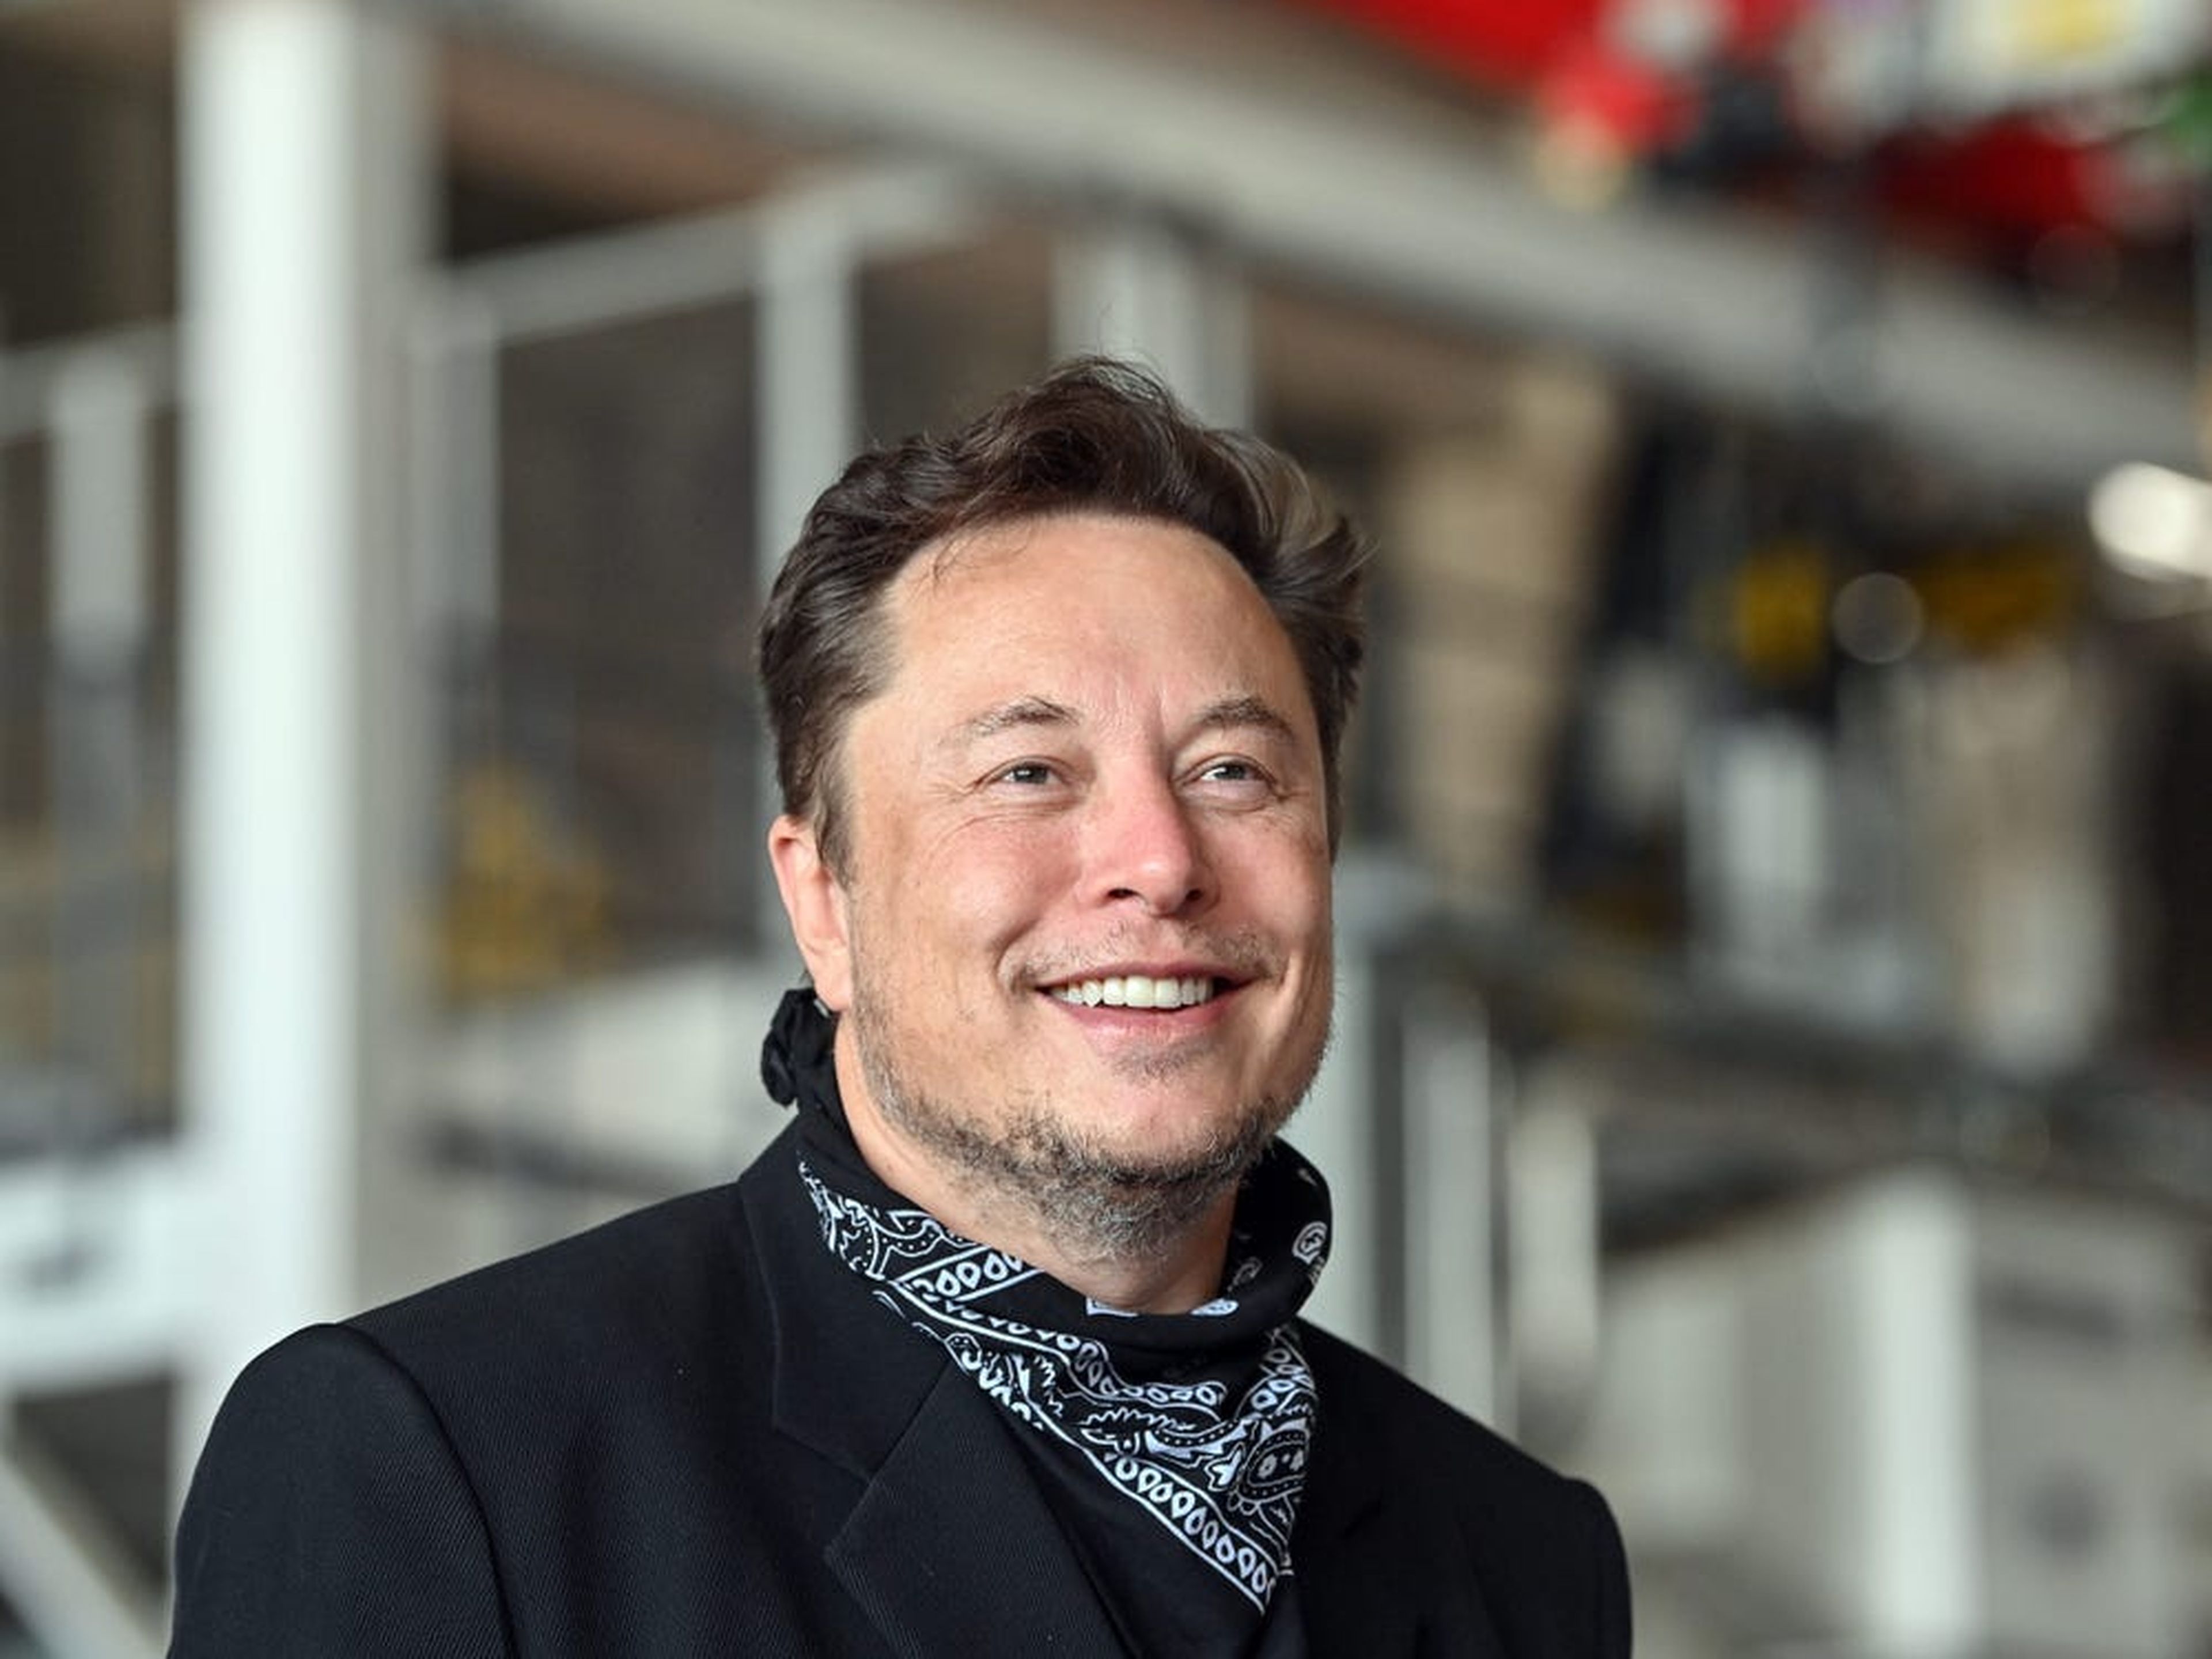 Elon Musk, además de fundador de Tesla y SpaceX, tiene una startup llamada Neuralink con la que pretende implantar chips neuronales.